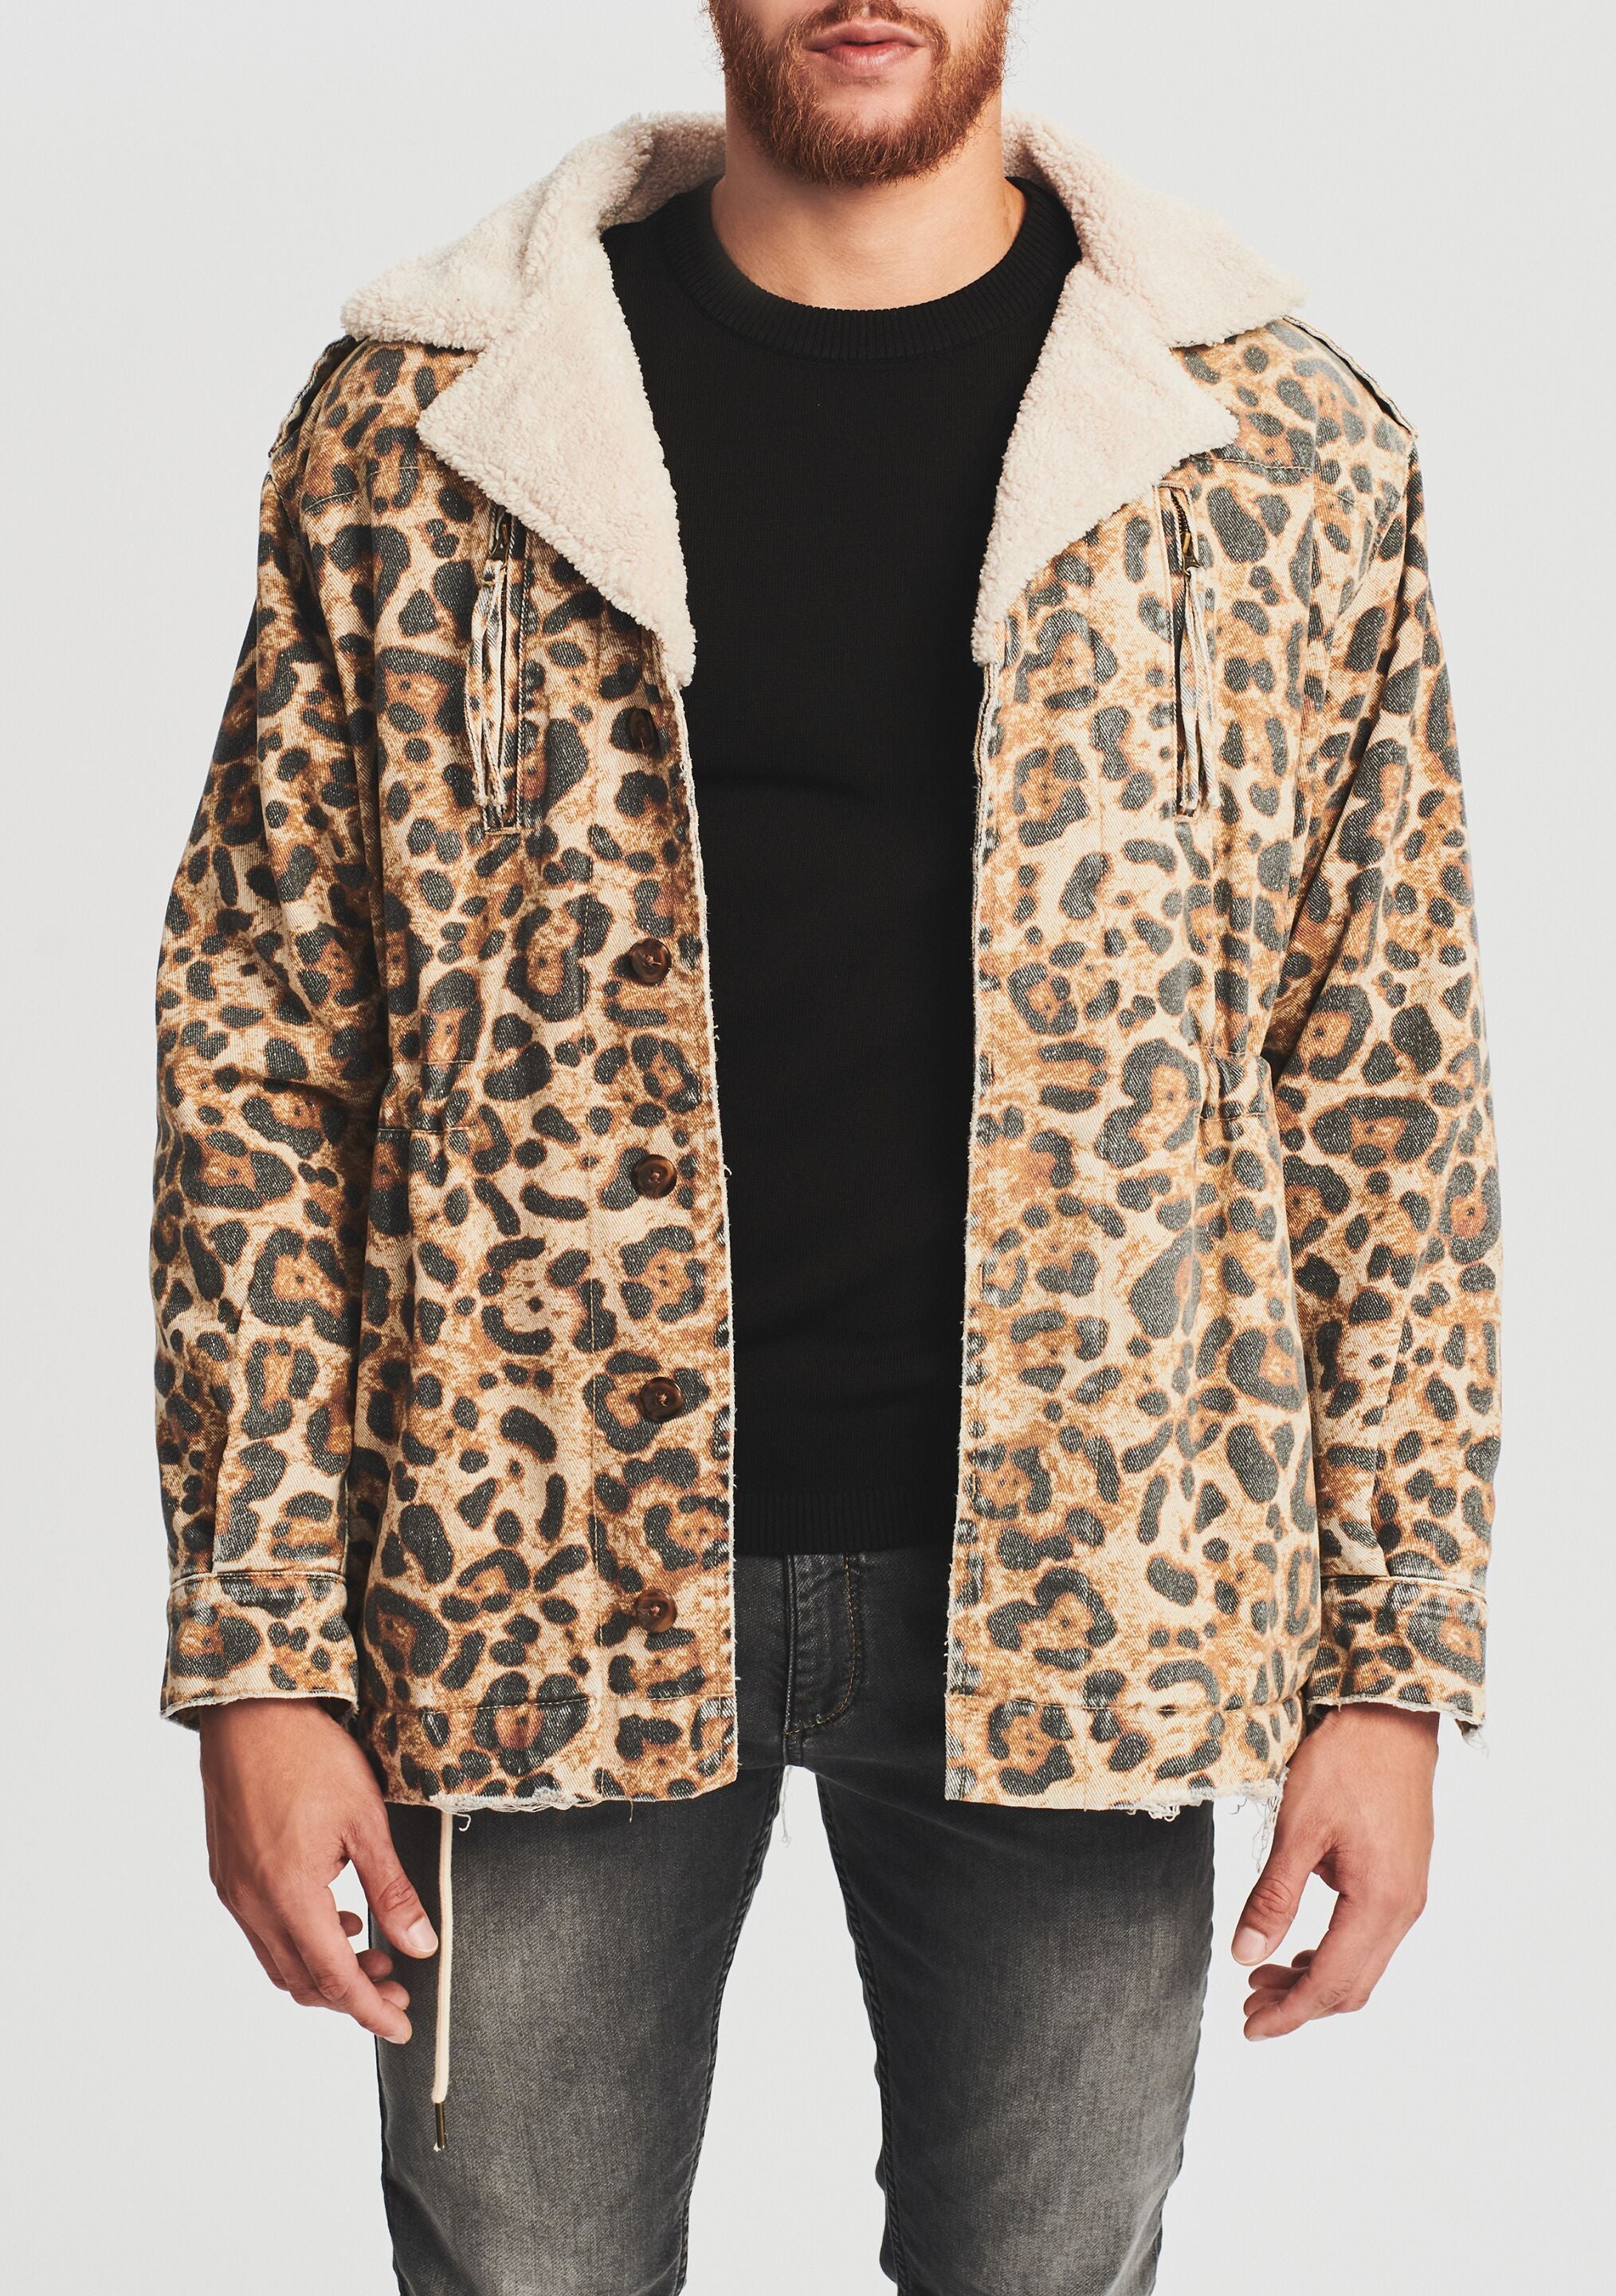 Men Leopard Printed Overcoat Faux Fur Outwear Coat Jacket Winter Parka Slim  Warm | eBay